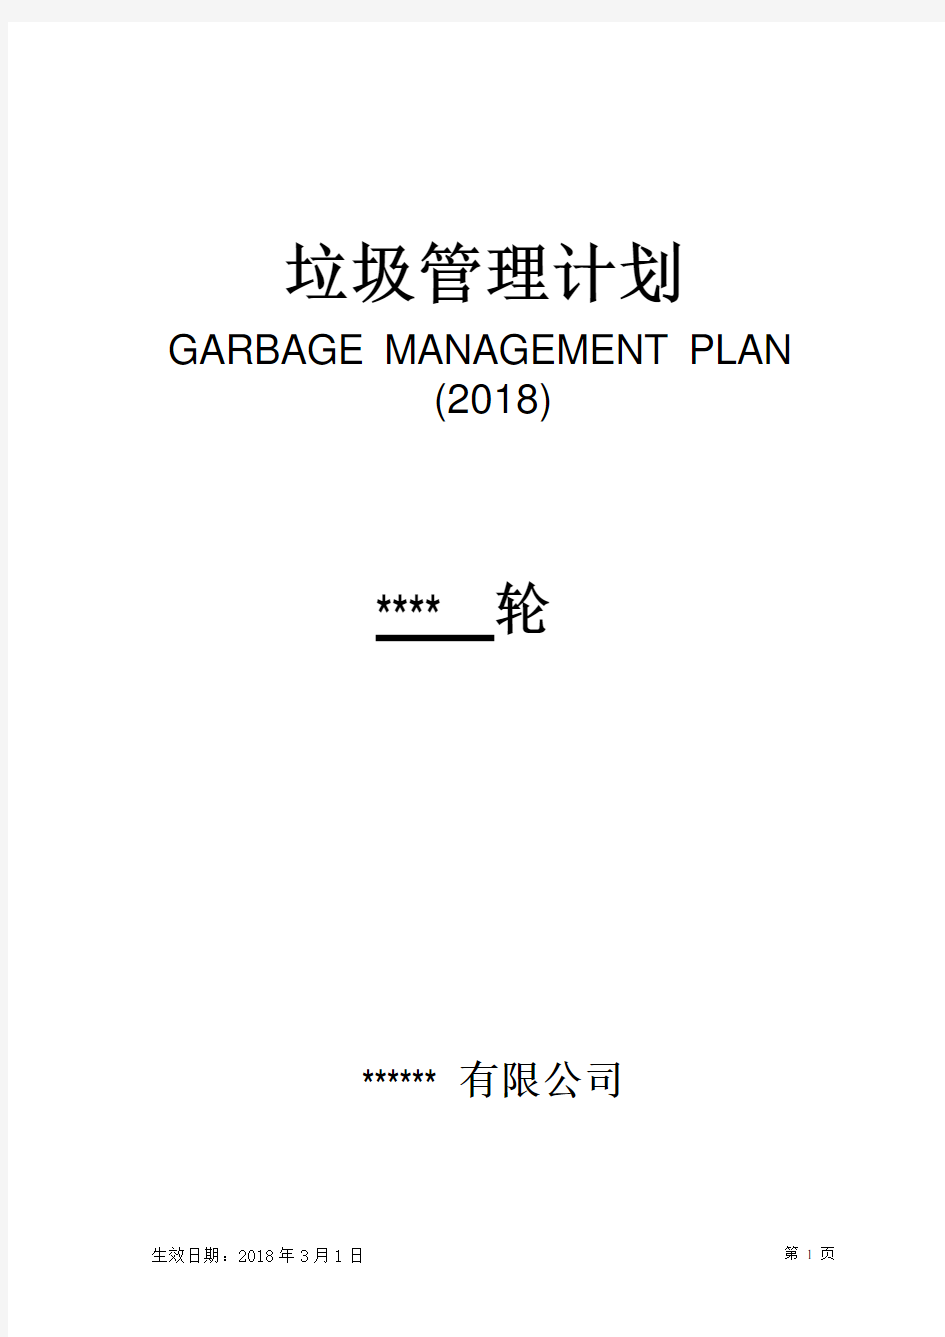 2018年最新垃圾管理计划可编辑通用版